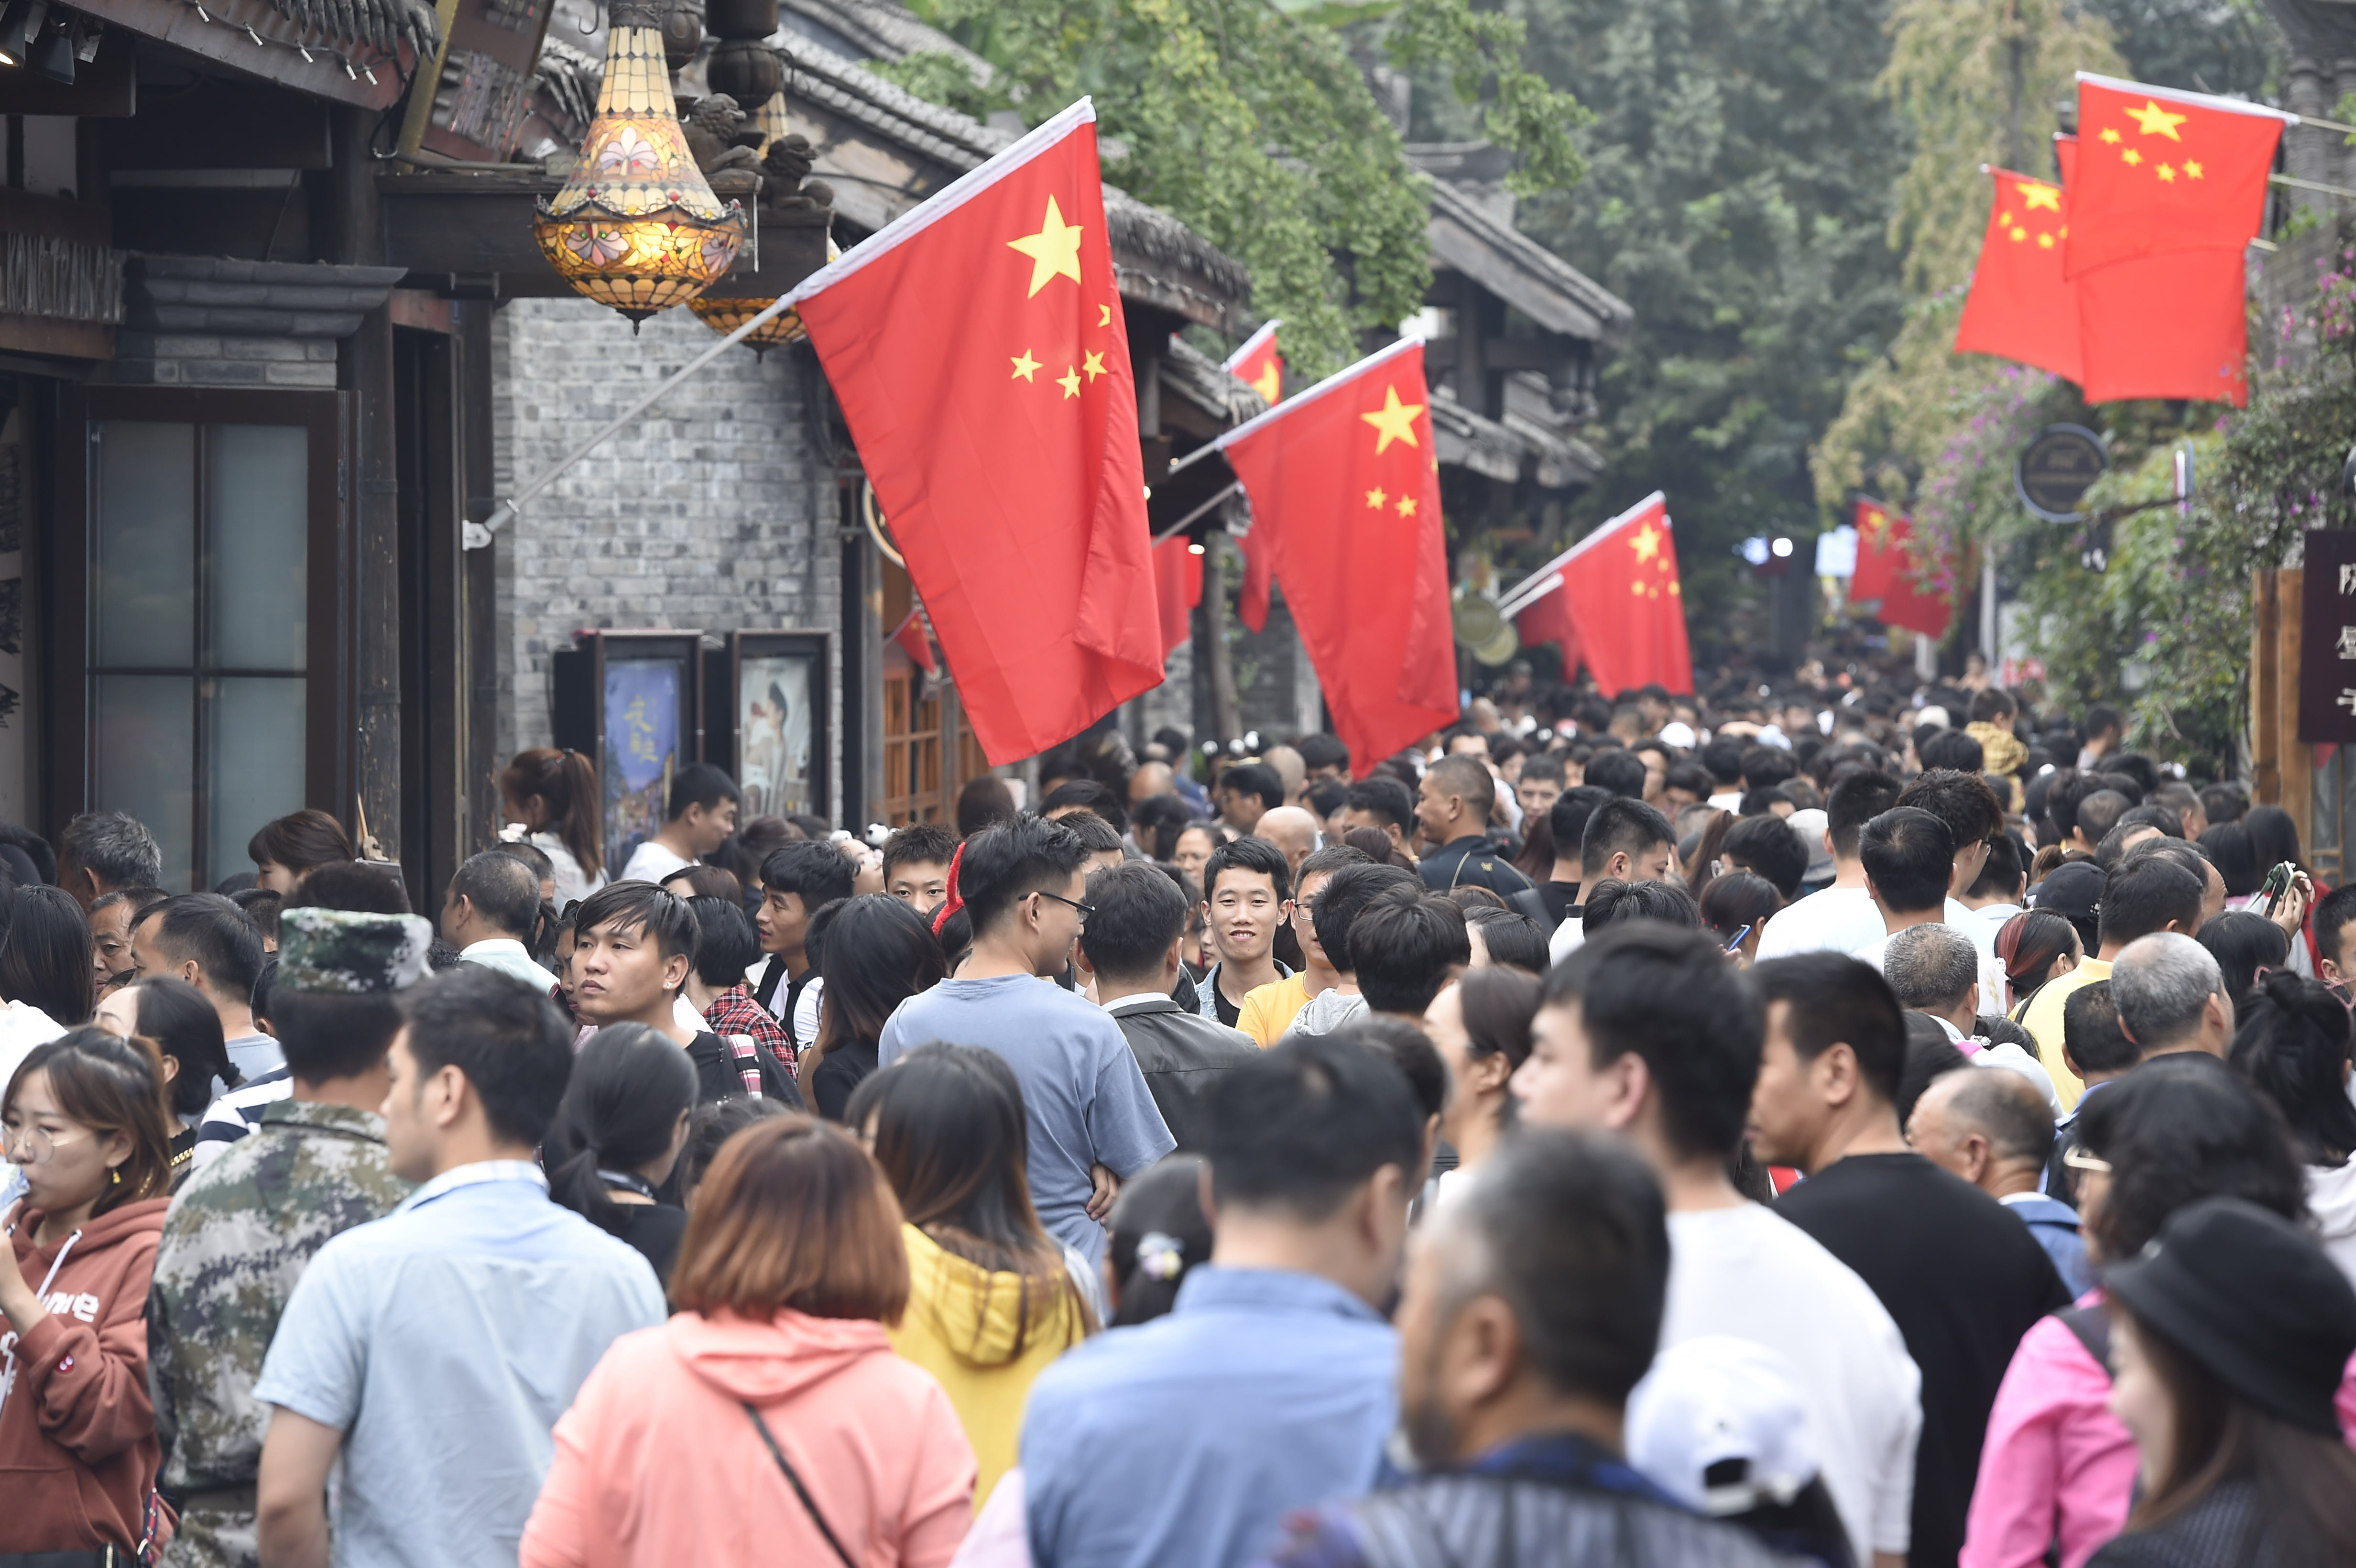 王欢 摄影报道10月2日,国庆长假第二天,成都宽窄巷子景区迎来游客旅游